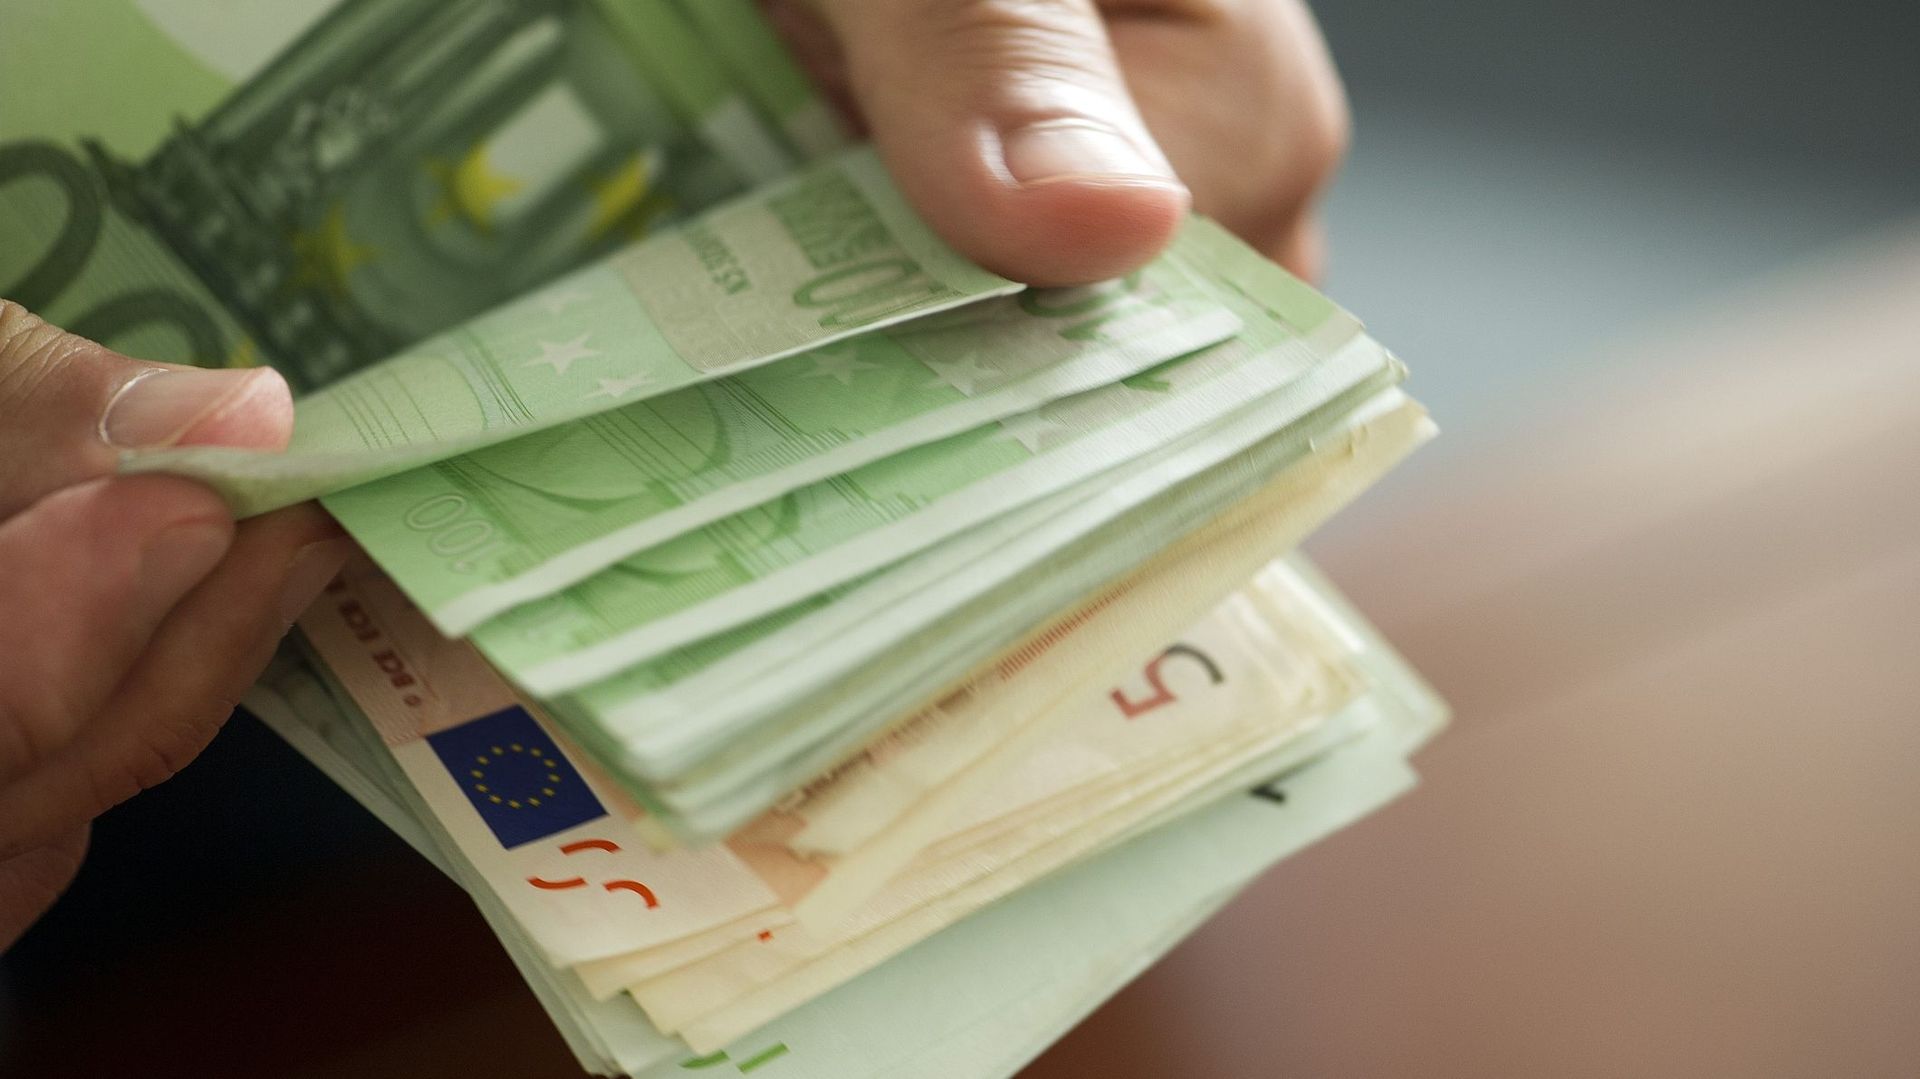 Les saisies de faux billets d'euros atteignent un nouveau plancher en 2021